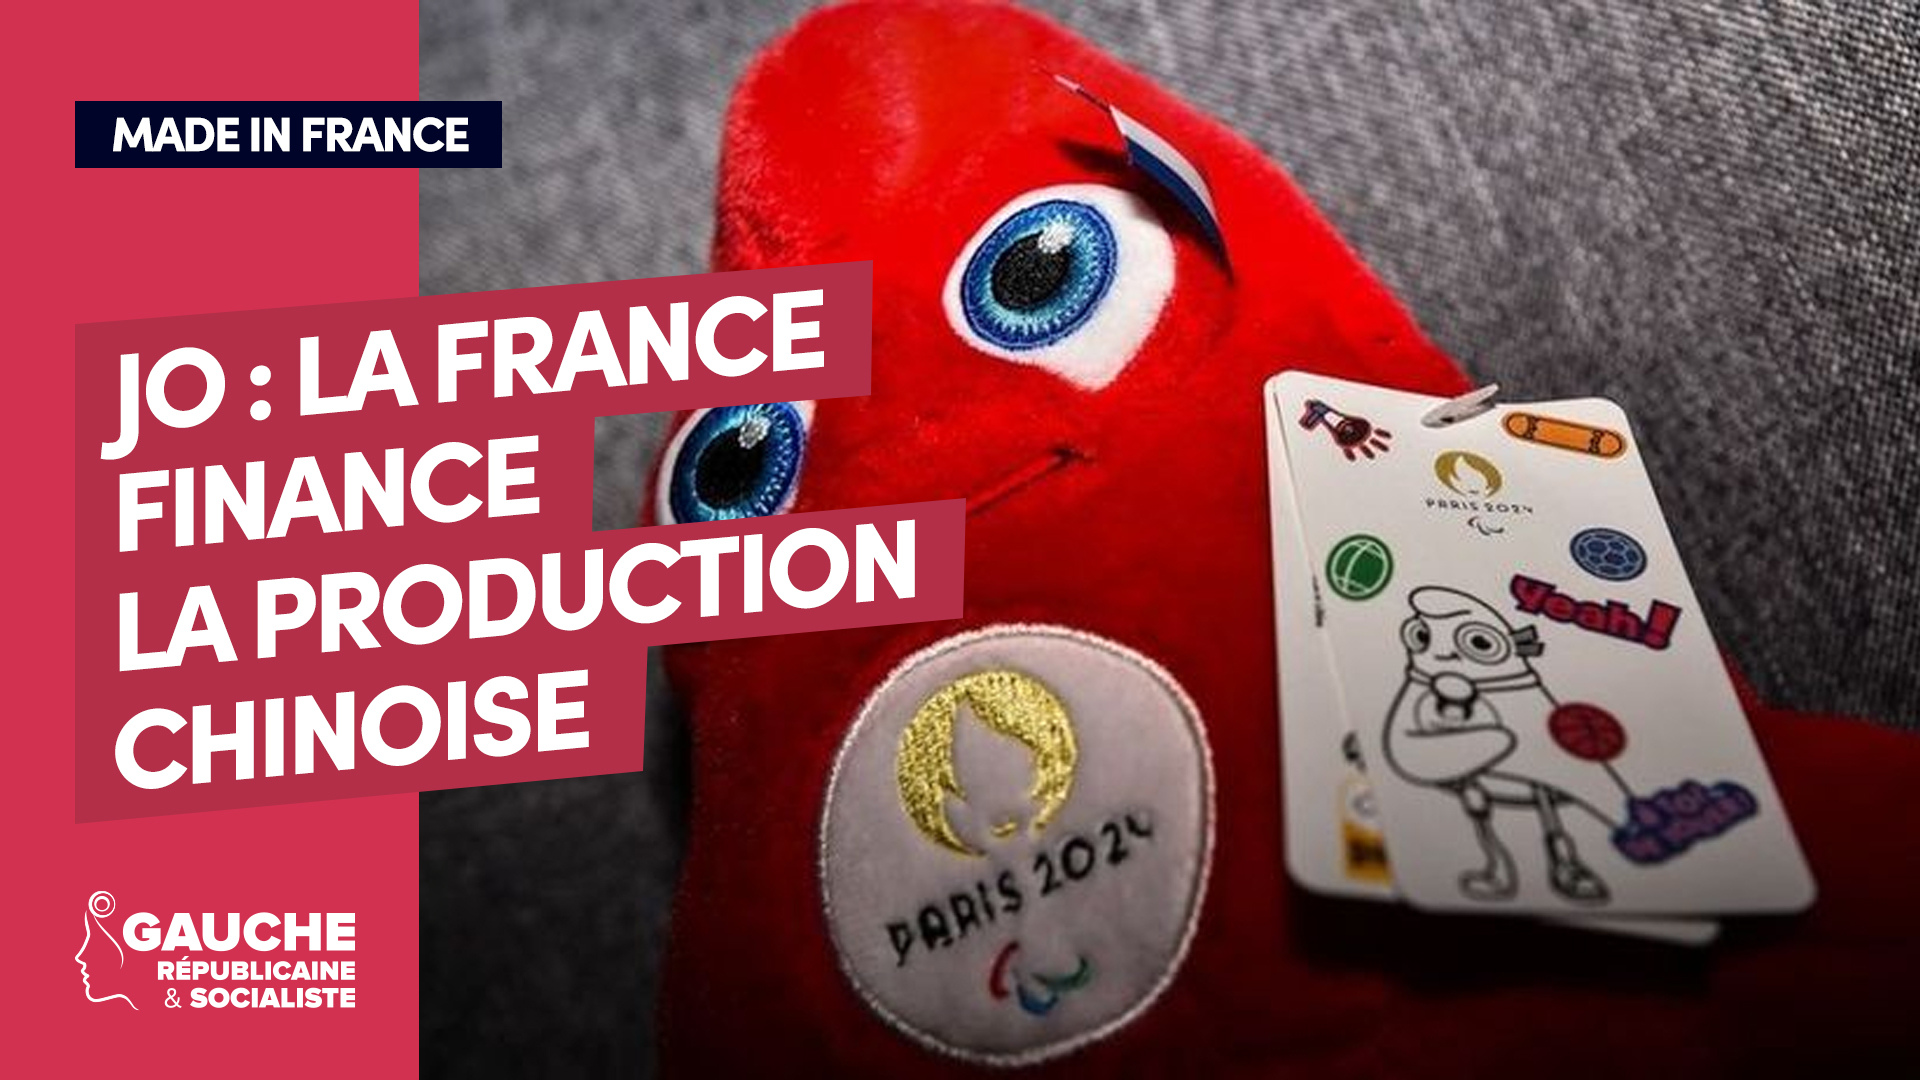 Paris 2024 : une production des mascottes made in France, le défi que  veut relever une entreprise en Bretagne